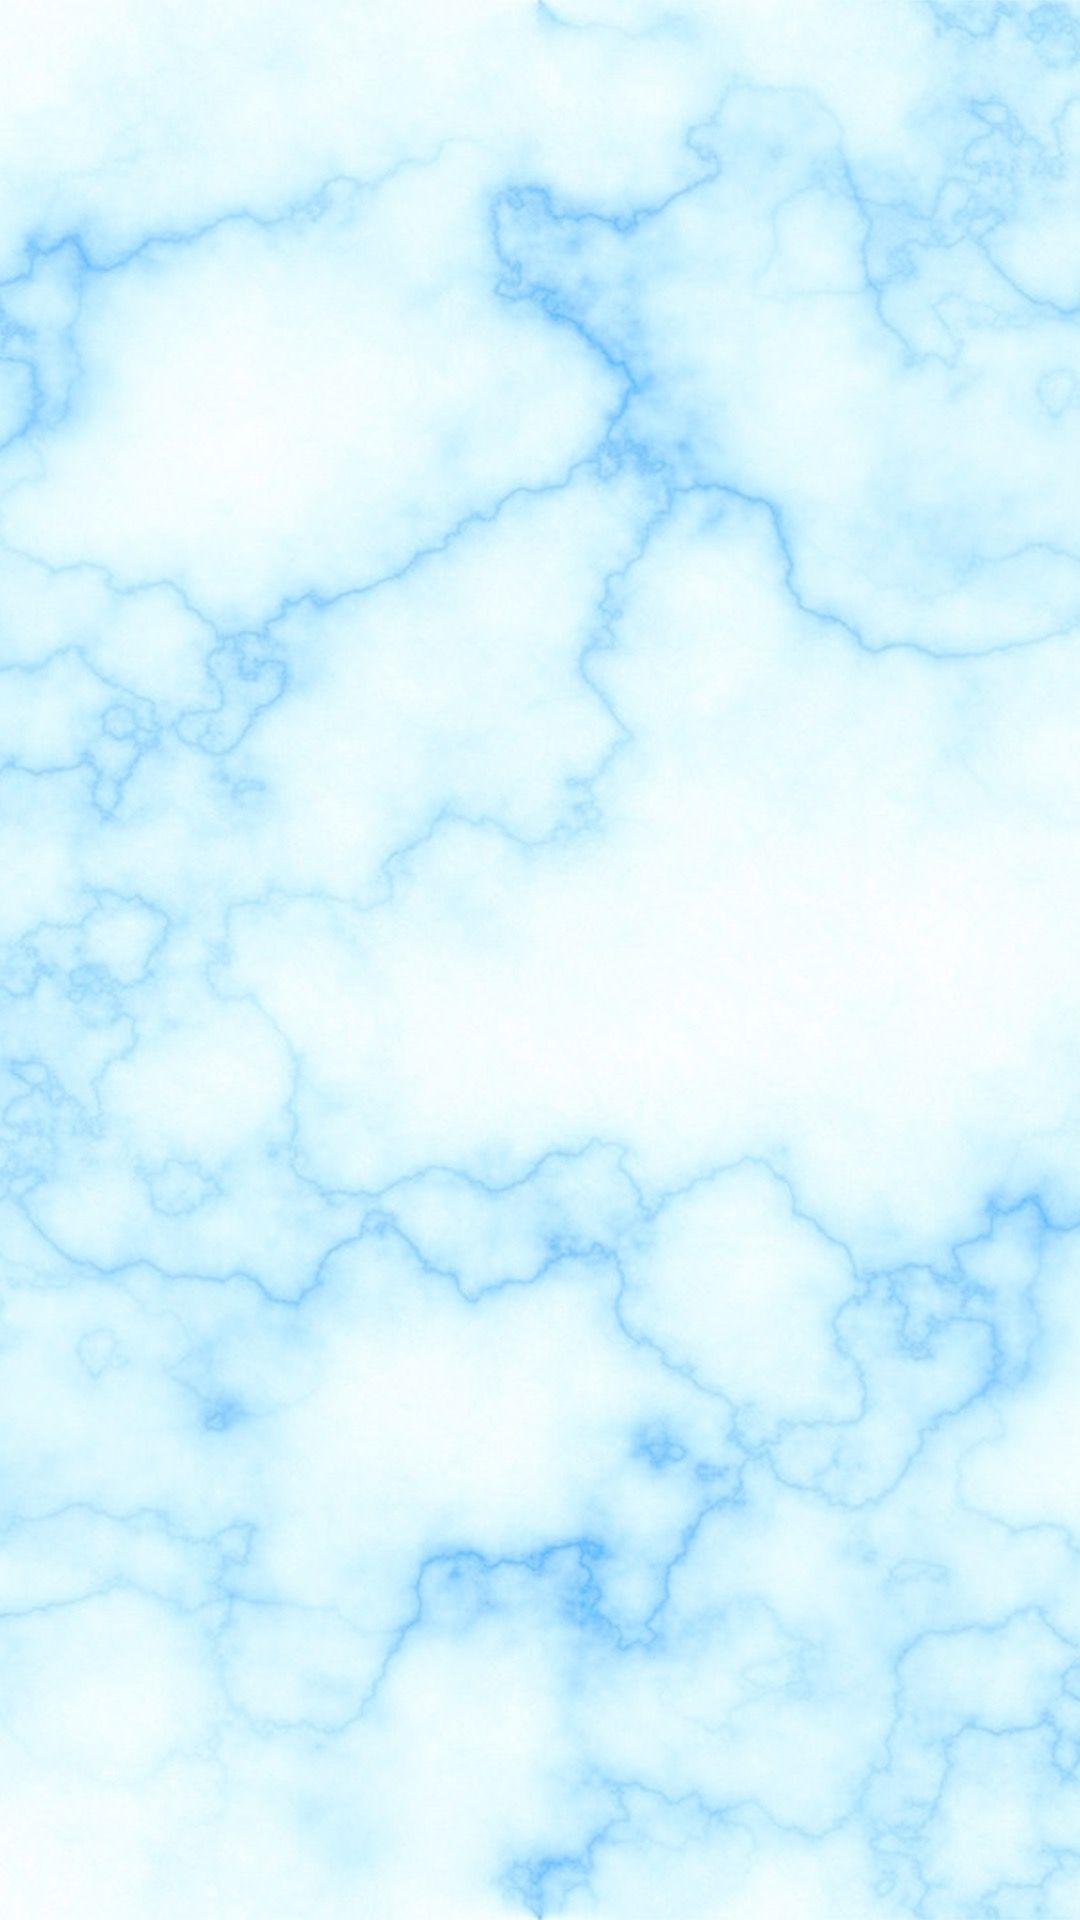 Blue marble wallpaper. Blue marble wallpaper, Blue